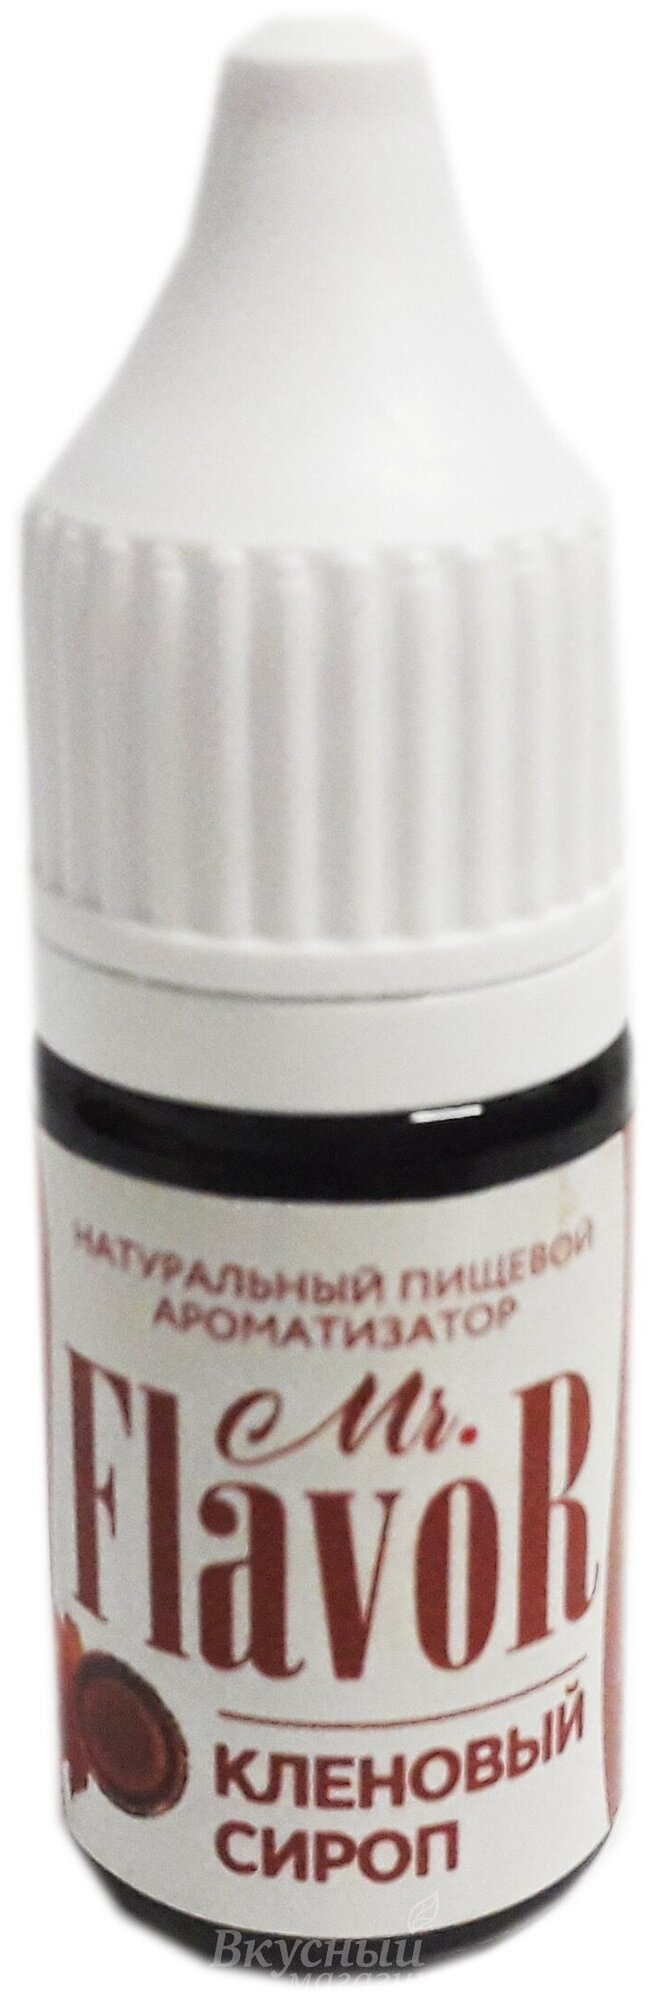 Ароматизатор натуральный жидкий Кленовый сироп Mr.Flavor, 10 мл.